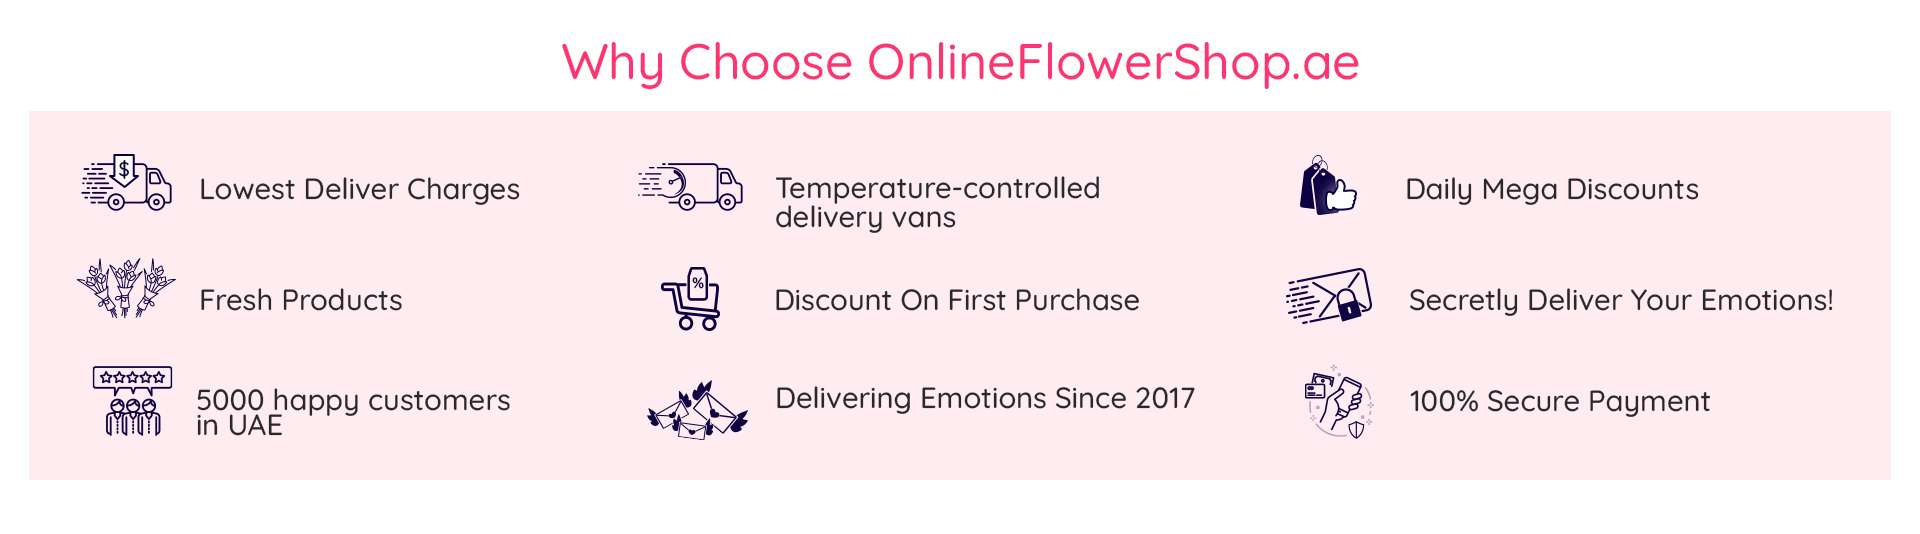 why choose onlineflowershop